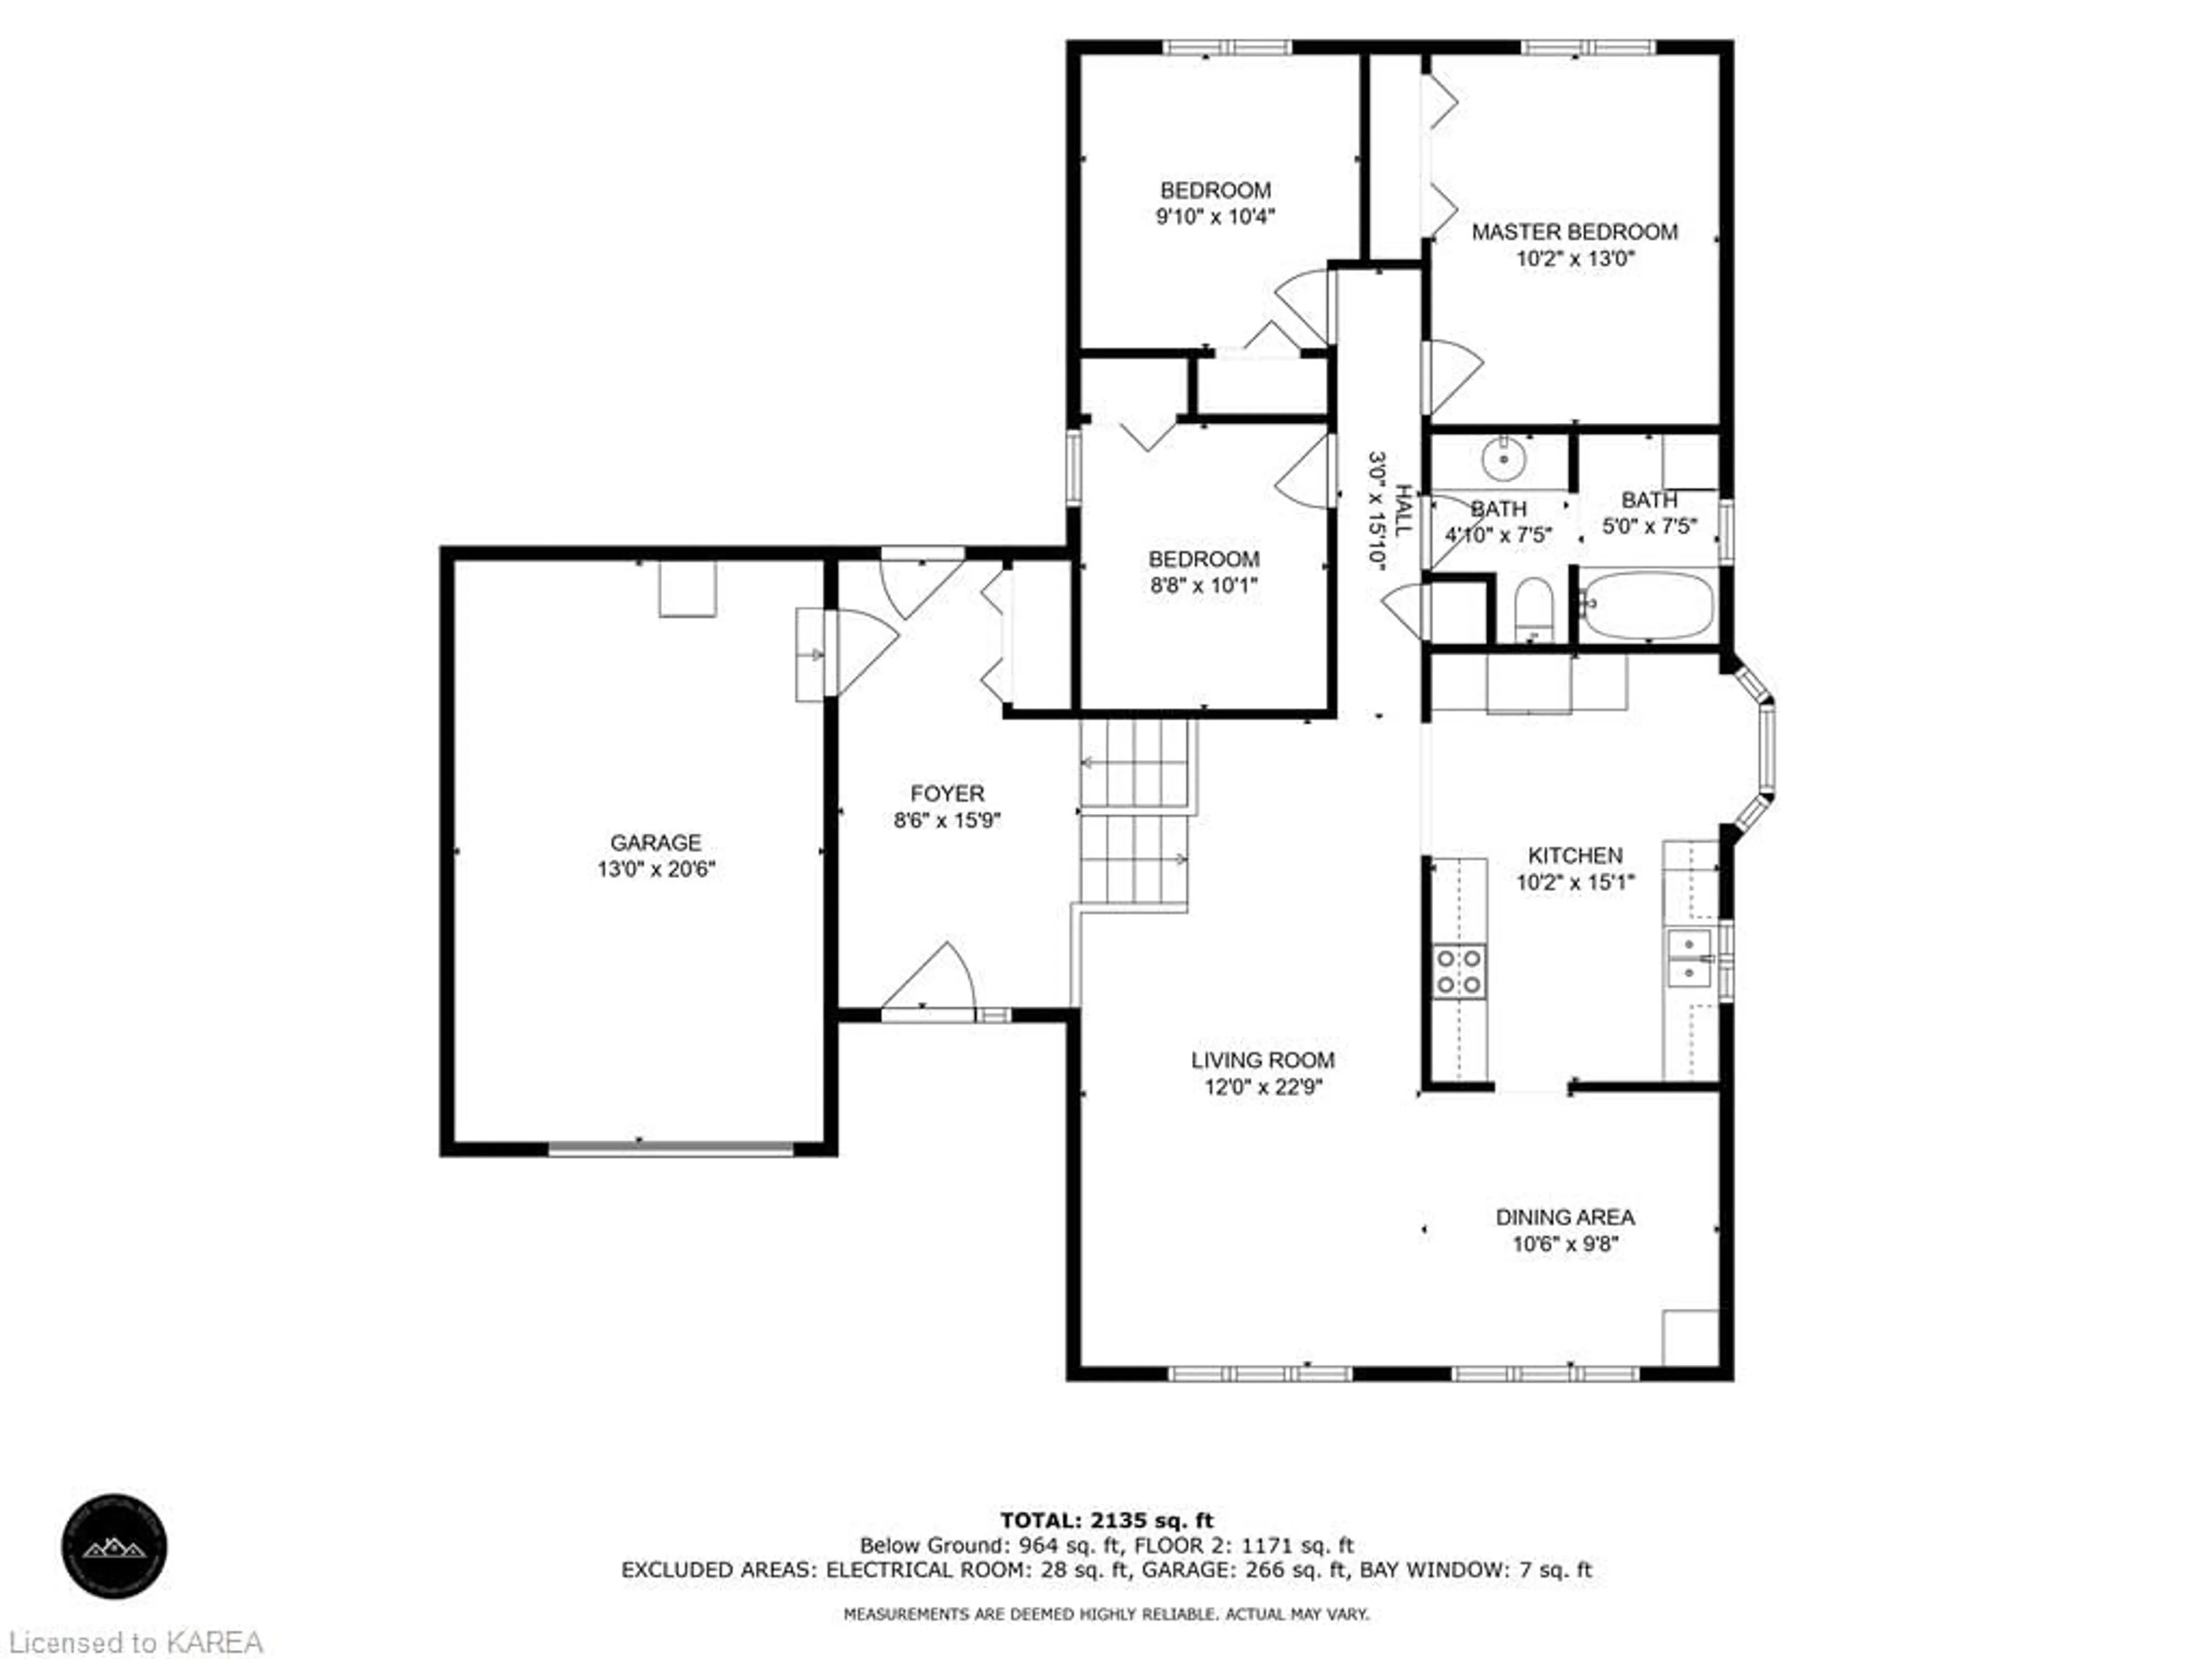 Floor plan for 898 Plainview Pl, Kingston Ontario K7P 2K3